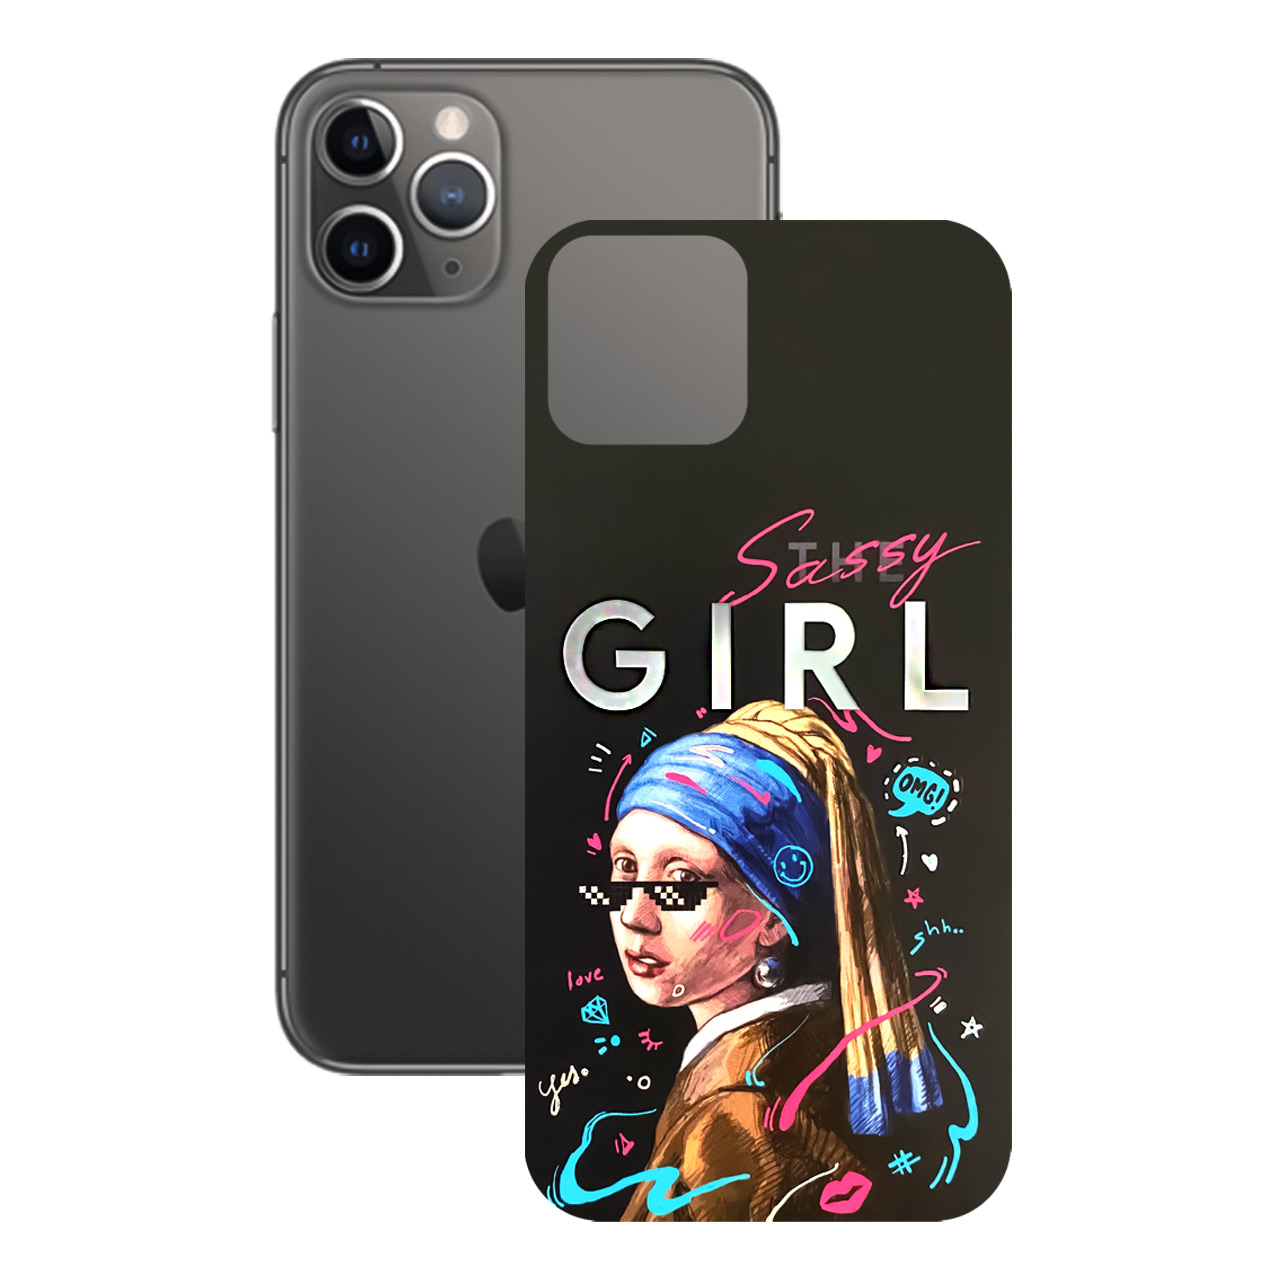 برچسب پوششی راک اسپیس طرح Girl مناسب برای گوشی موبایل اپل iPhone 11 Pro